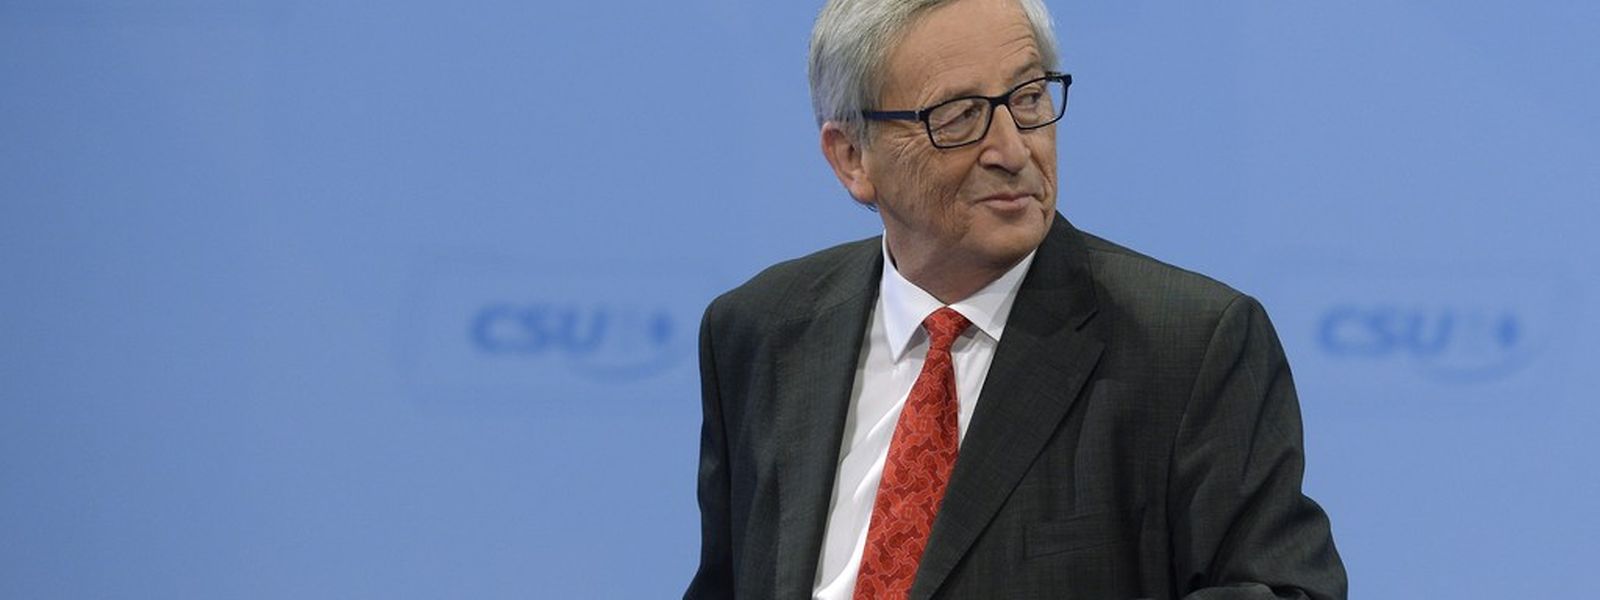 Jean-Claude Juncker au congrès de la CSU vendredi 12 décembre à Nuremberg